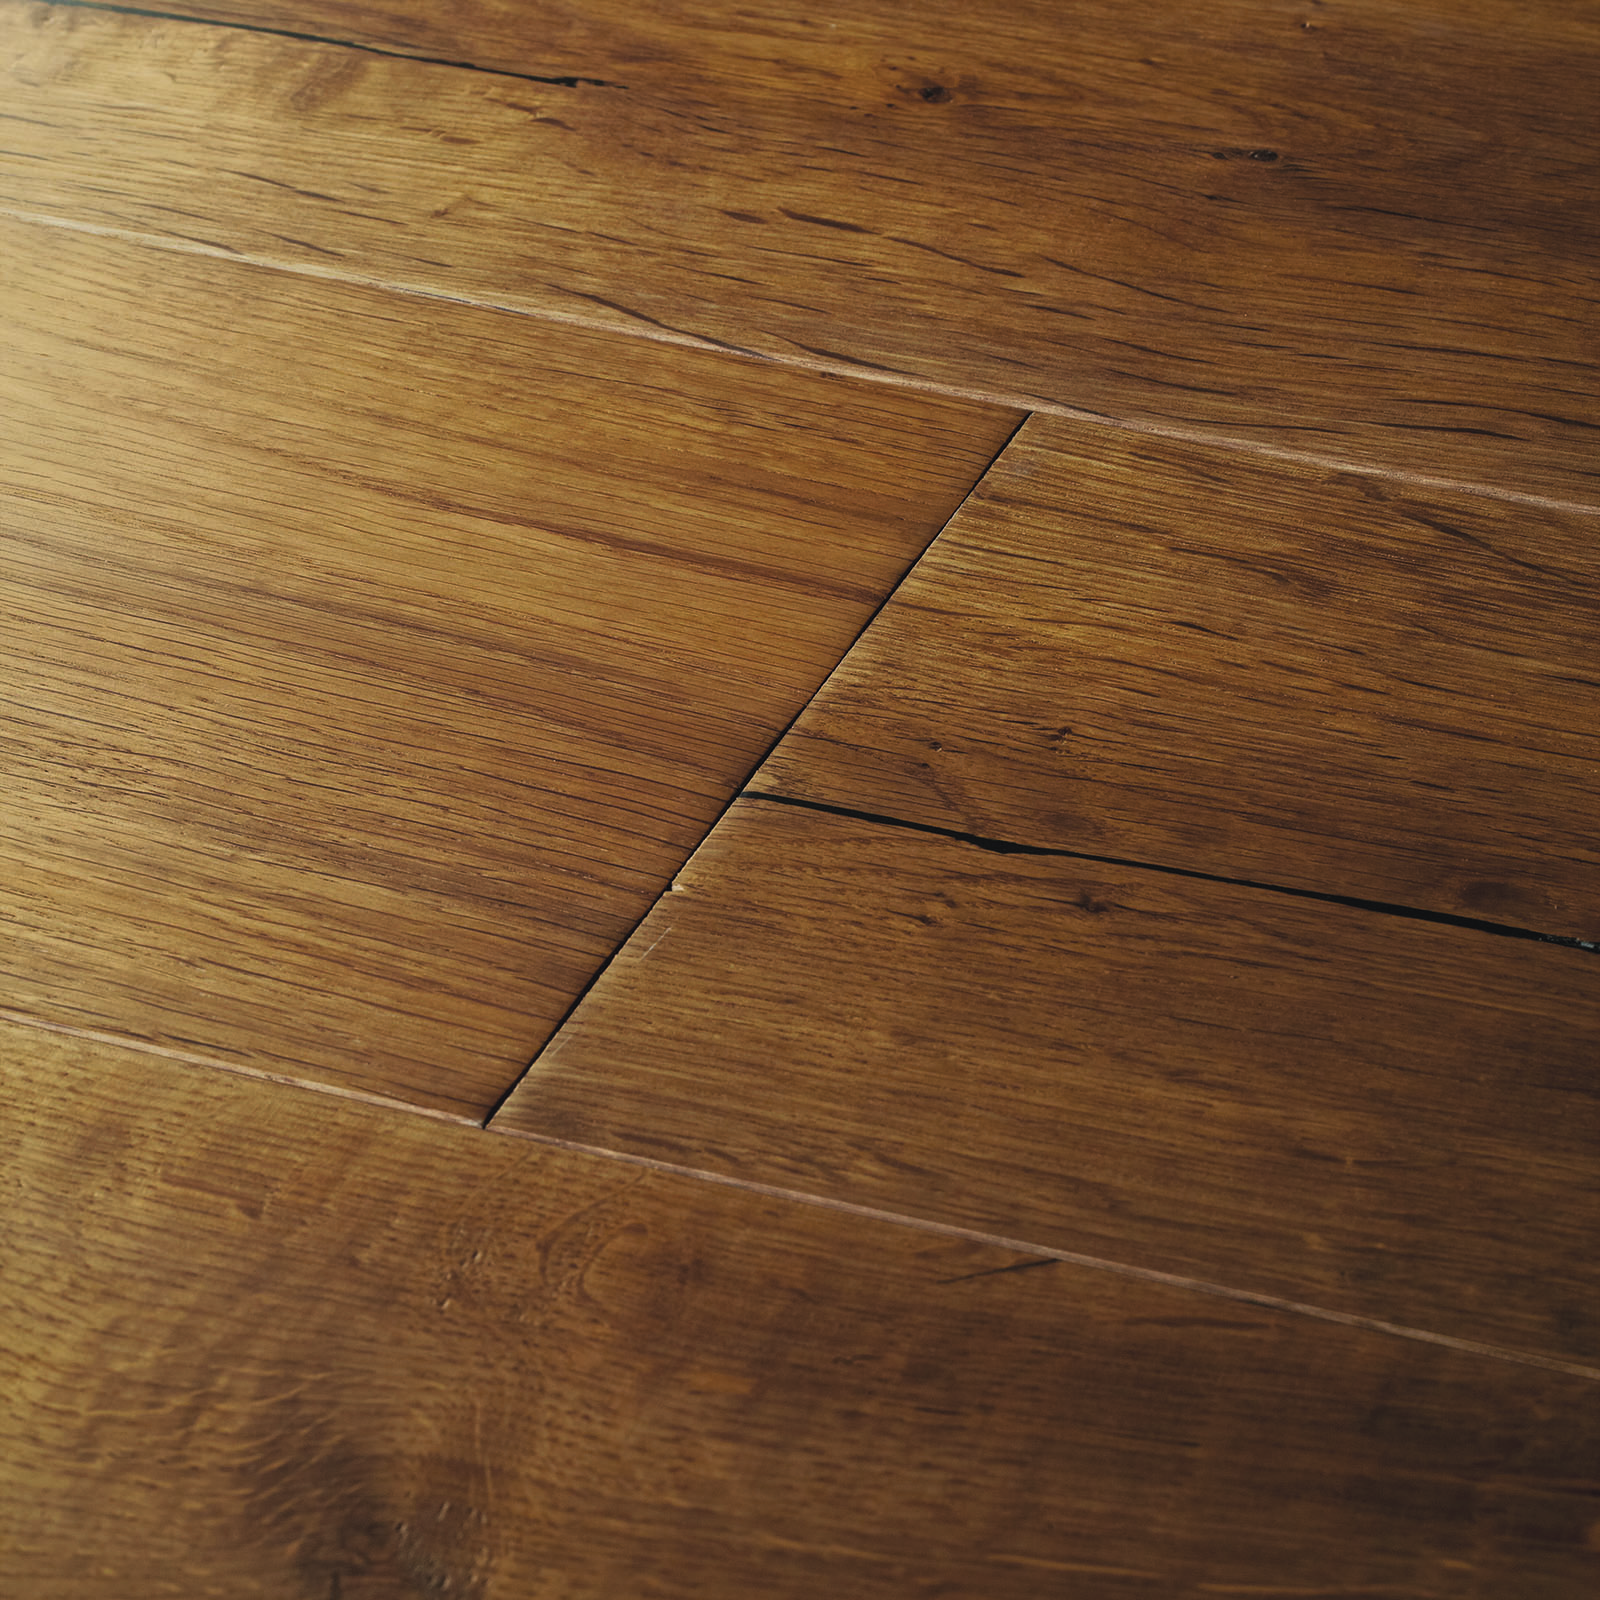 Engineered wood flooring Berkeley Smoked Oak Flooring,